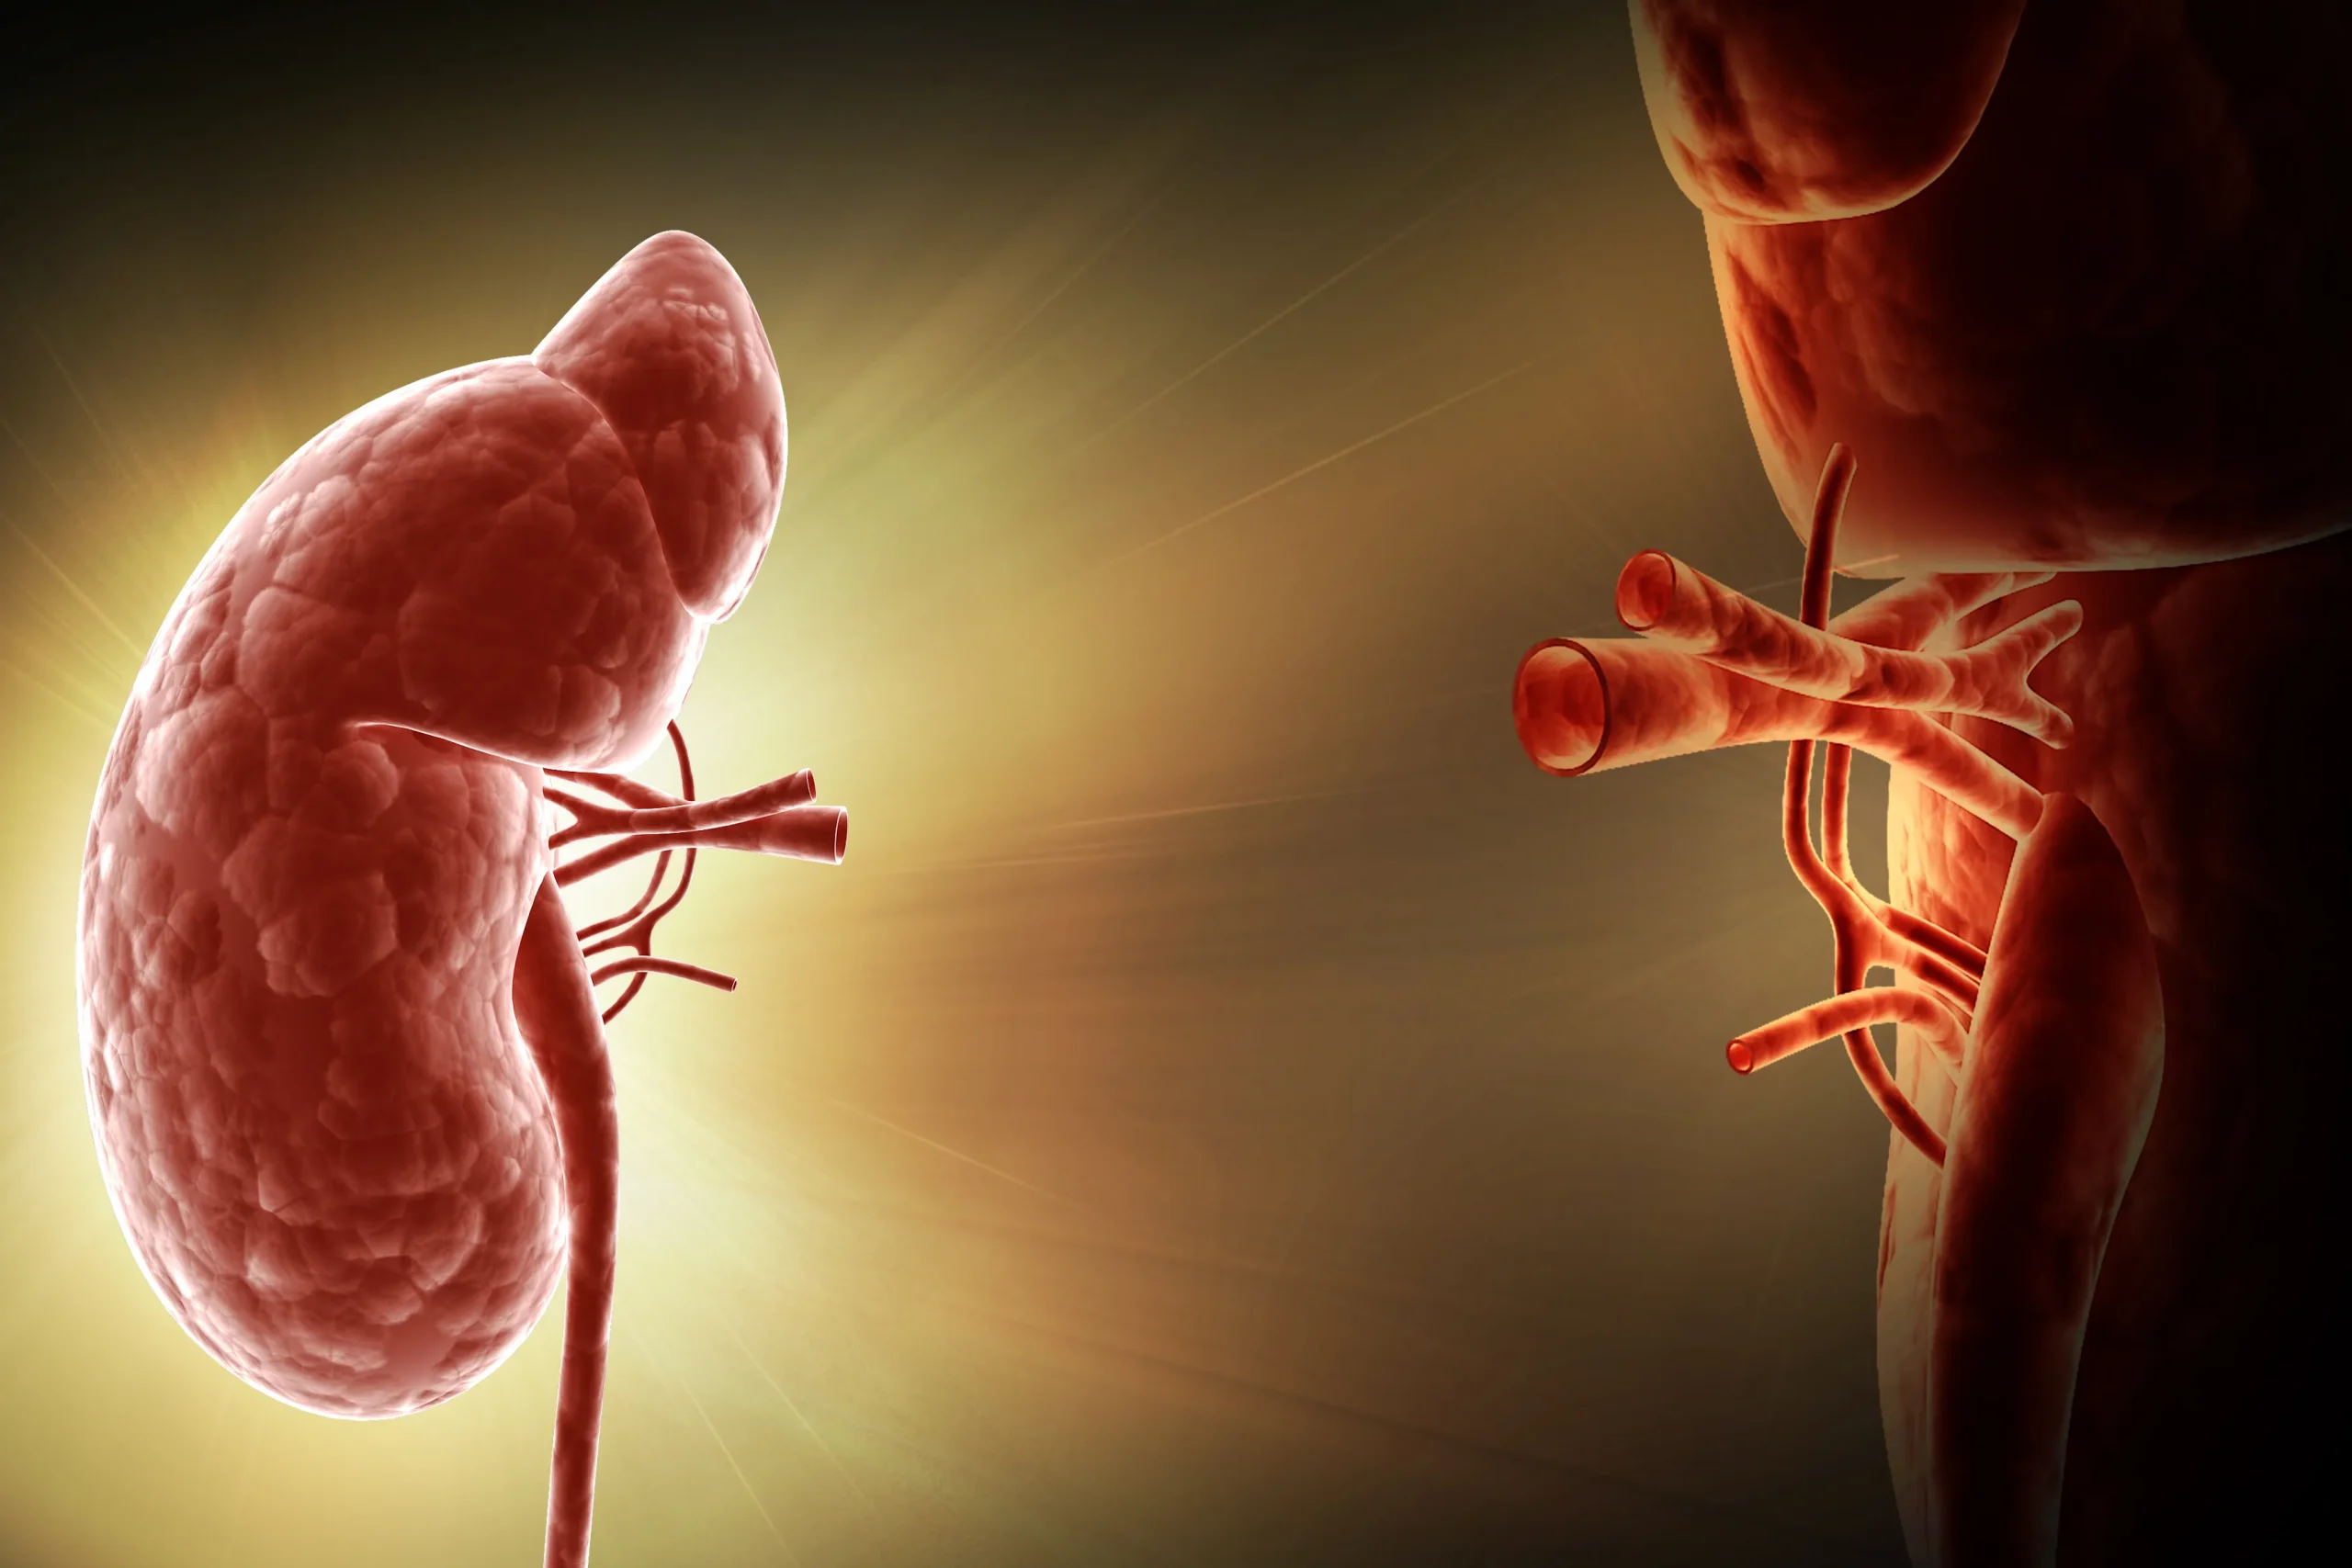 Μεταμόσχευση νεφρού: Ασφαλής όταν ο δότης έχει COVID, λέει νέα μελέτη